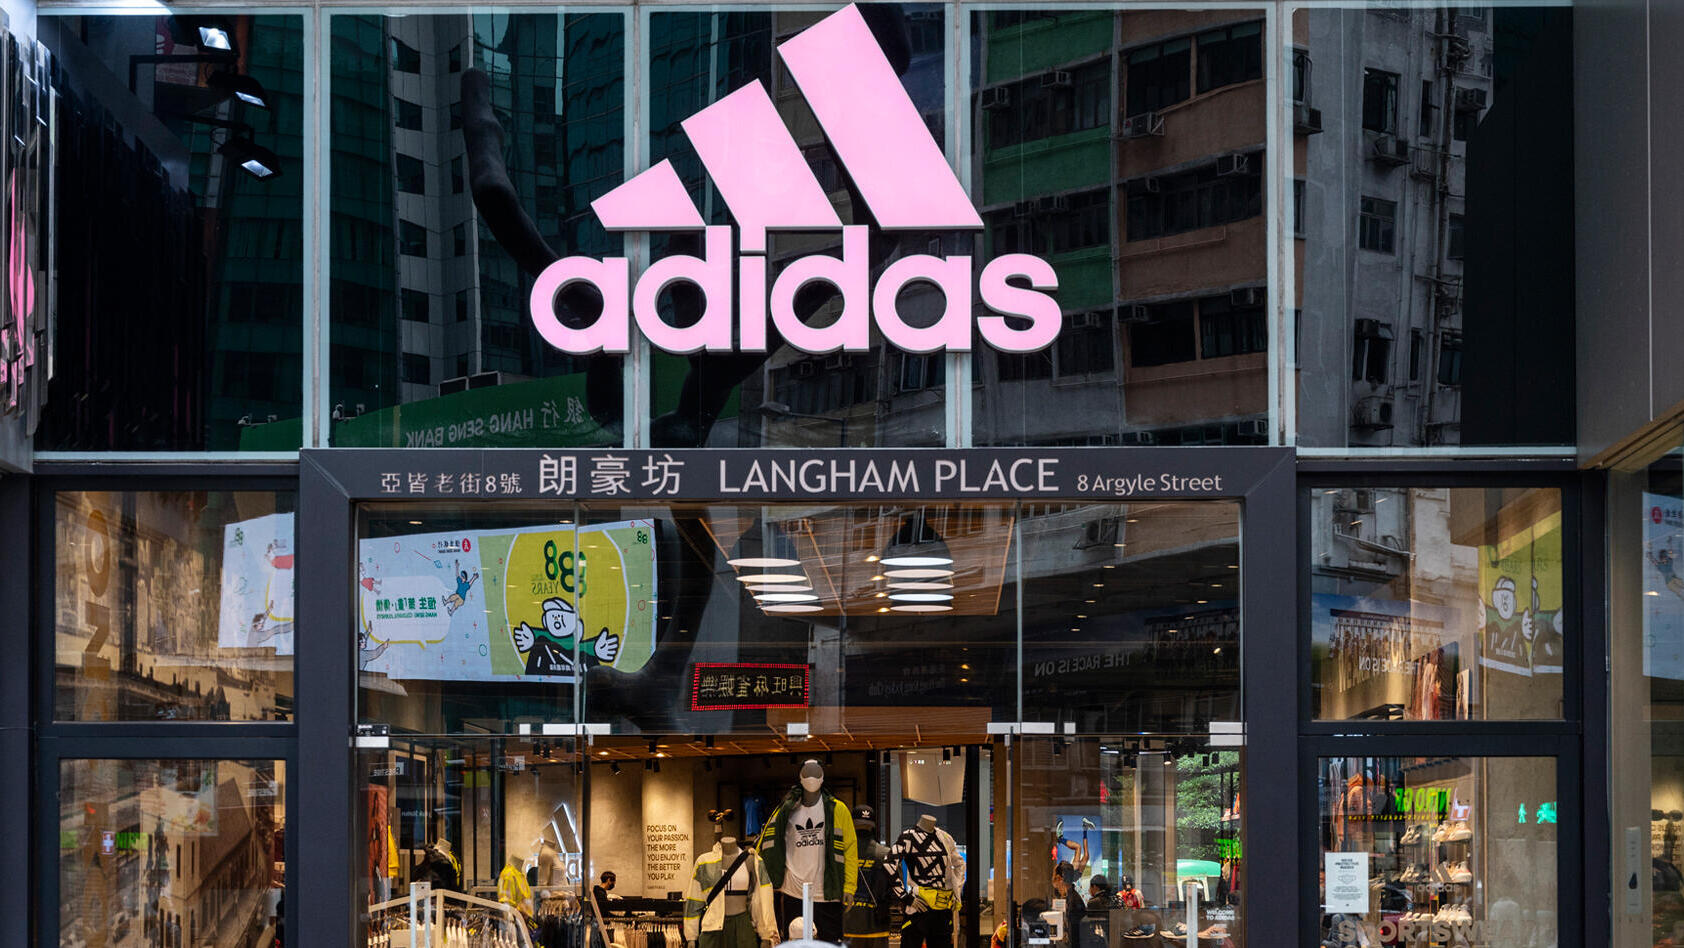 הולכי רגל חולפים על פני החנות והלוגו של מותג בגדי הספורט הרב-לאומי הגרמני אדידס בהונג קונג.